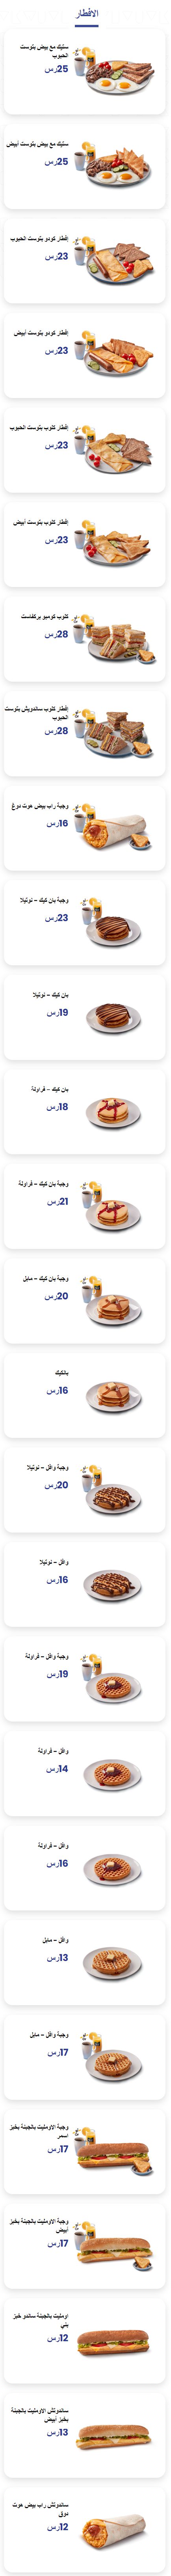 اسعار منيو مطعم كودو «Kudu» في السعودية , رقم التوصيل والدليفري